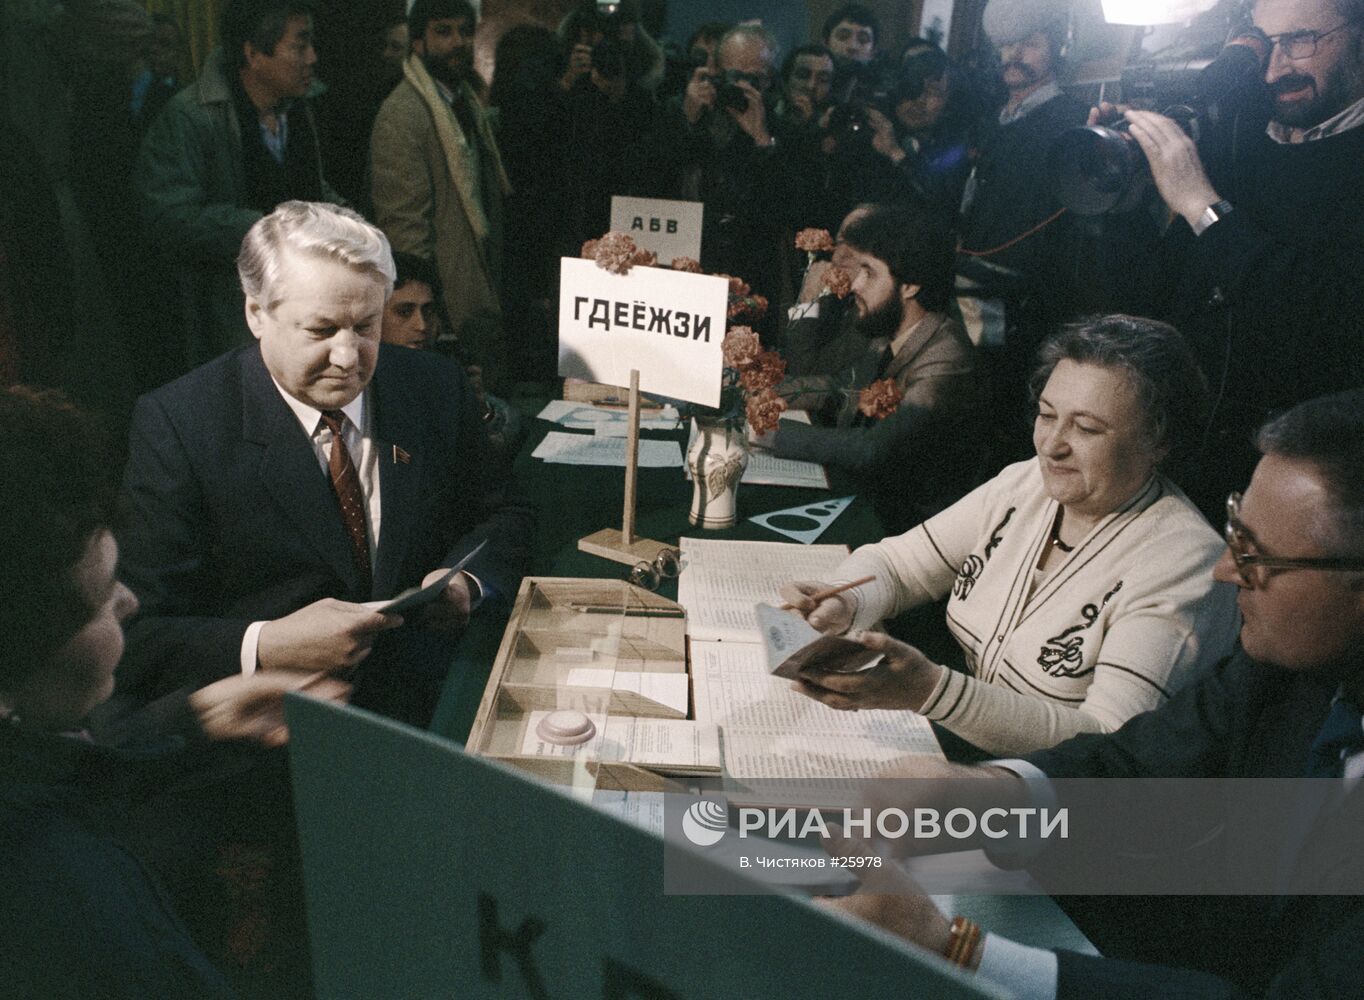 Первые советы народных депутатов. Ельцин народный депутат Ельцин 1989. Выборы народных депутатов СССР 1989. В 1989 года состоялись выборы народных депутатов СССР.